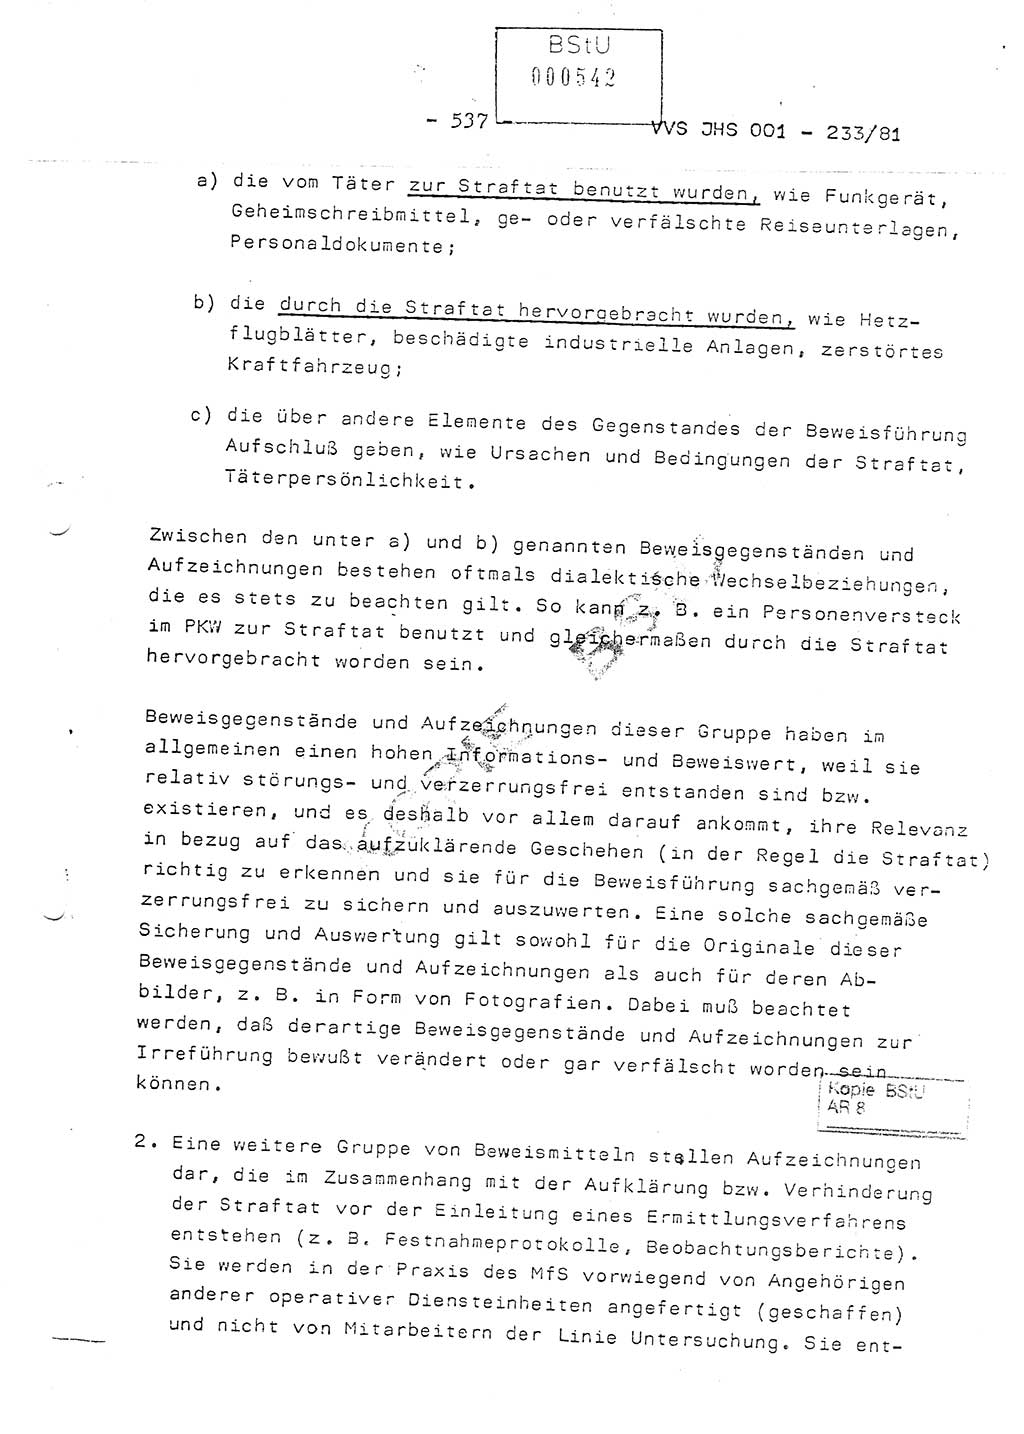 Dissertation Oberstleutnant Horst Zank (JHS), Oberstleutnant Dr. Karl-Heinz Knoblauch (JHS), Oberstleutnant Gustav-Adolf Kowalewski (HA Ⅸ), Oberstleutnant Wolfgang Plötner (HA Ⅸ), Ministerium für Staatssicherheit (MfS) [Deutsche Demokratische Republik (DDR)], Juristische Hochschule (JHS), Vertrauliche Verschlußsache (VVS) o001-233/81, Potsdam 1981, Blatt 537 (Diss. MfS DDR JHS VVS o001-233/81 1981, Bl. 537)